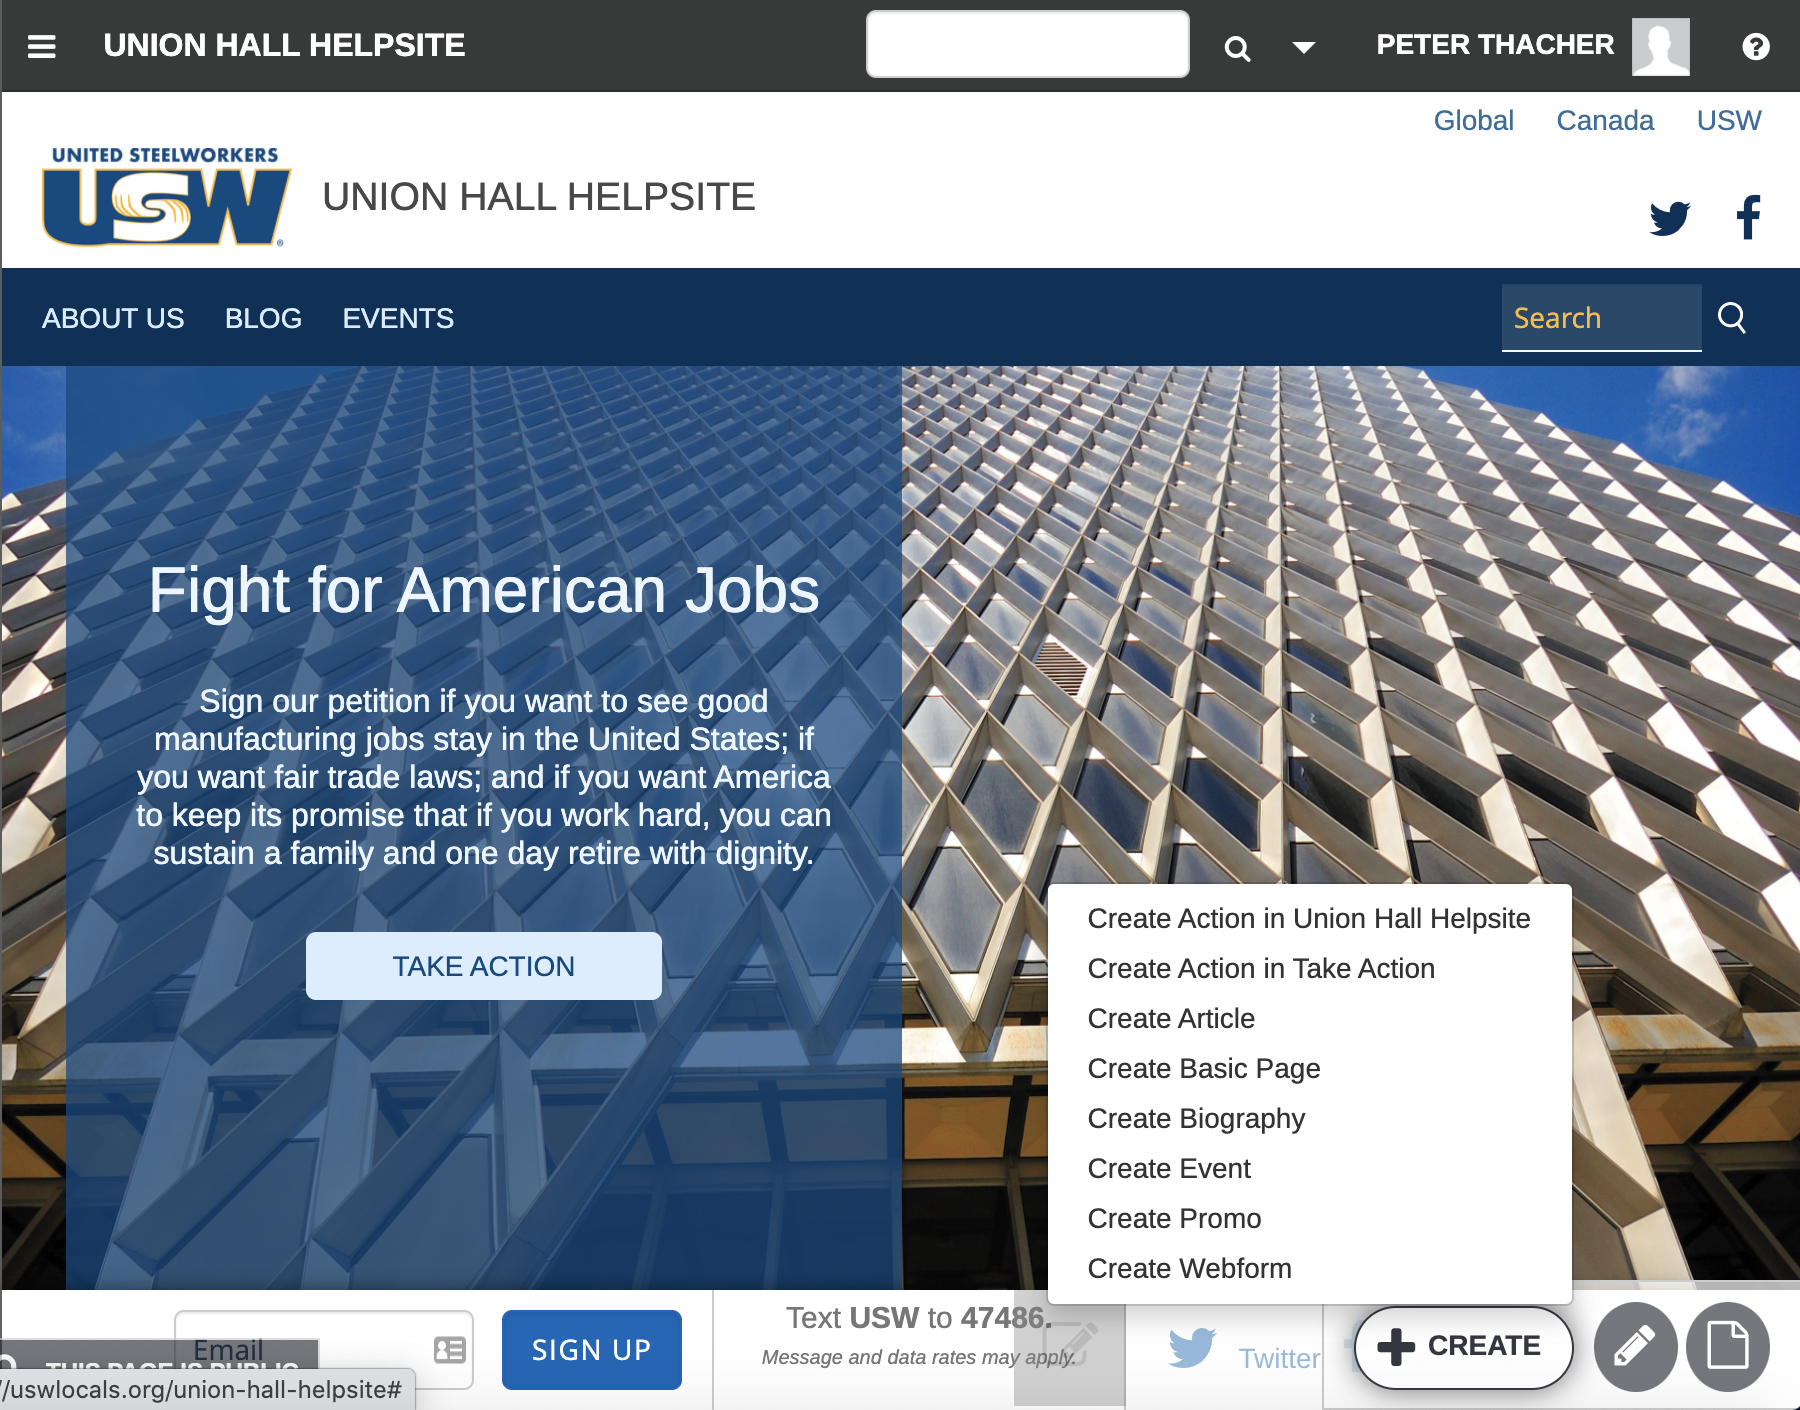 union-hall-homepage-create-menu-highlighted